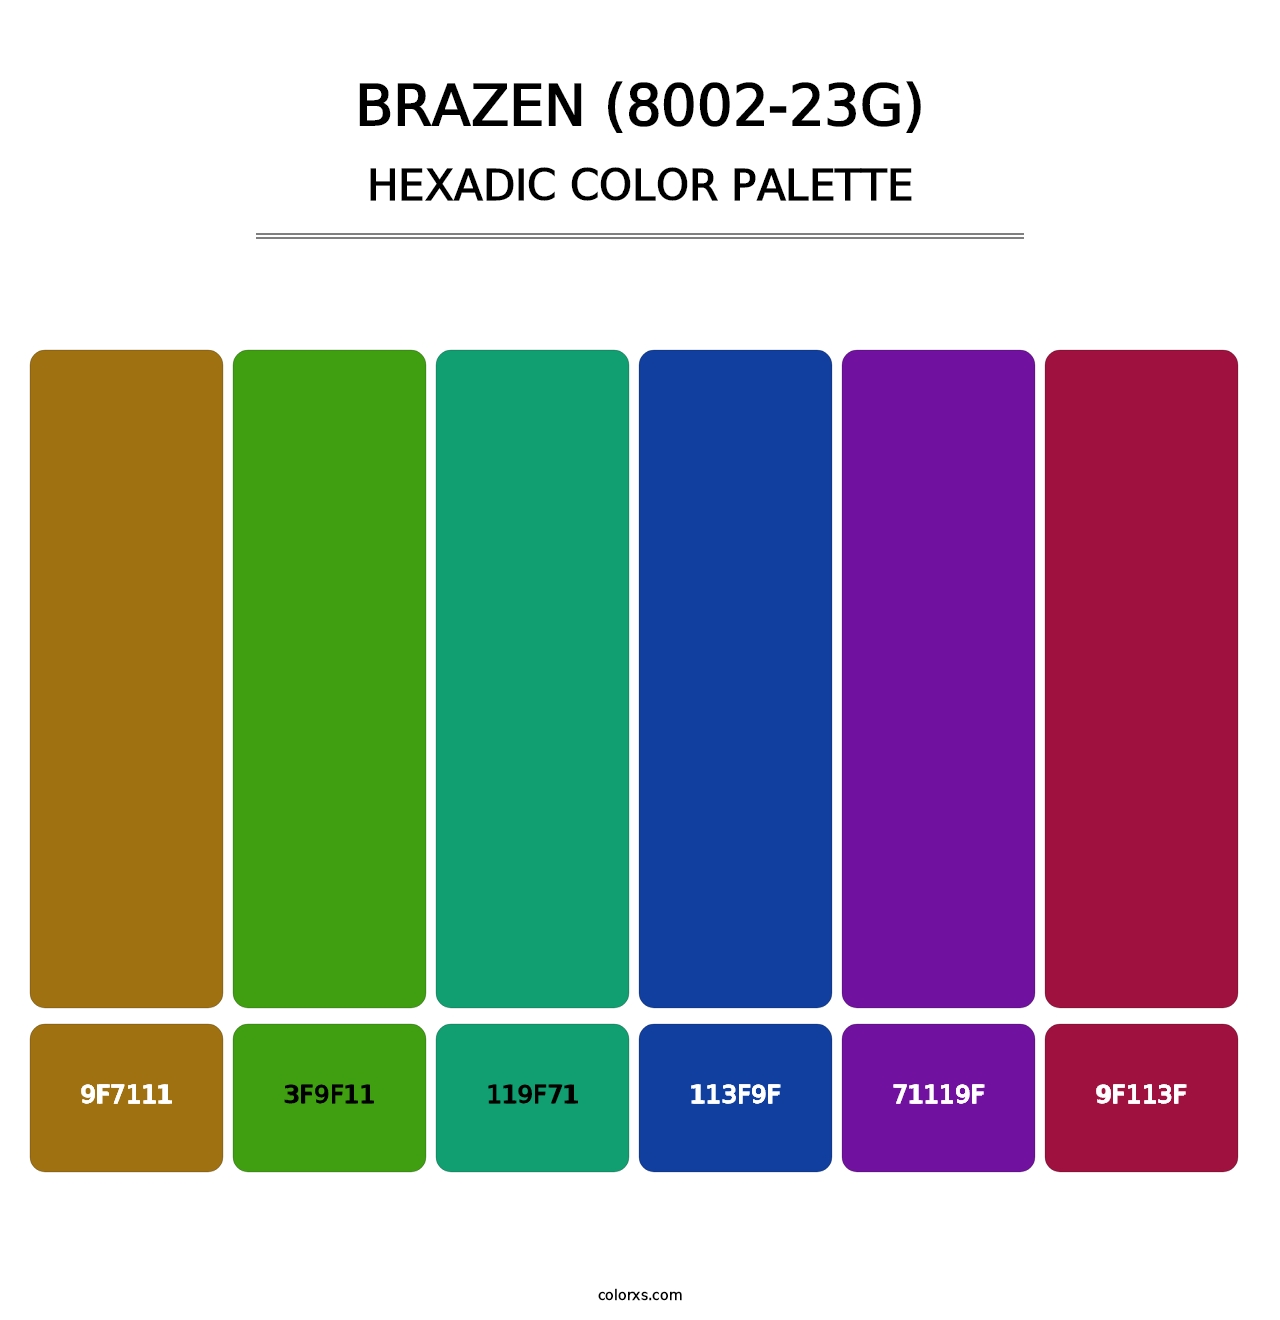 Brazen (8002-23G) - Hexadic Color Palette